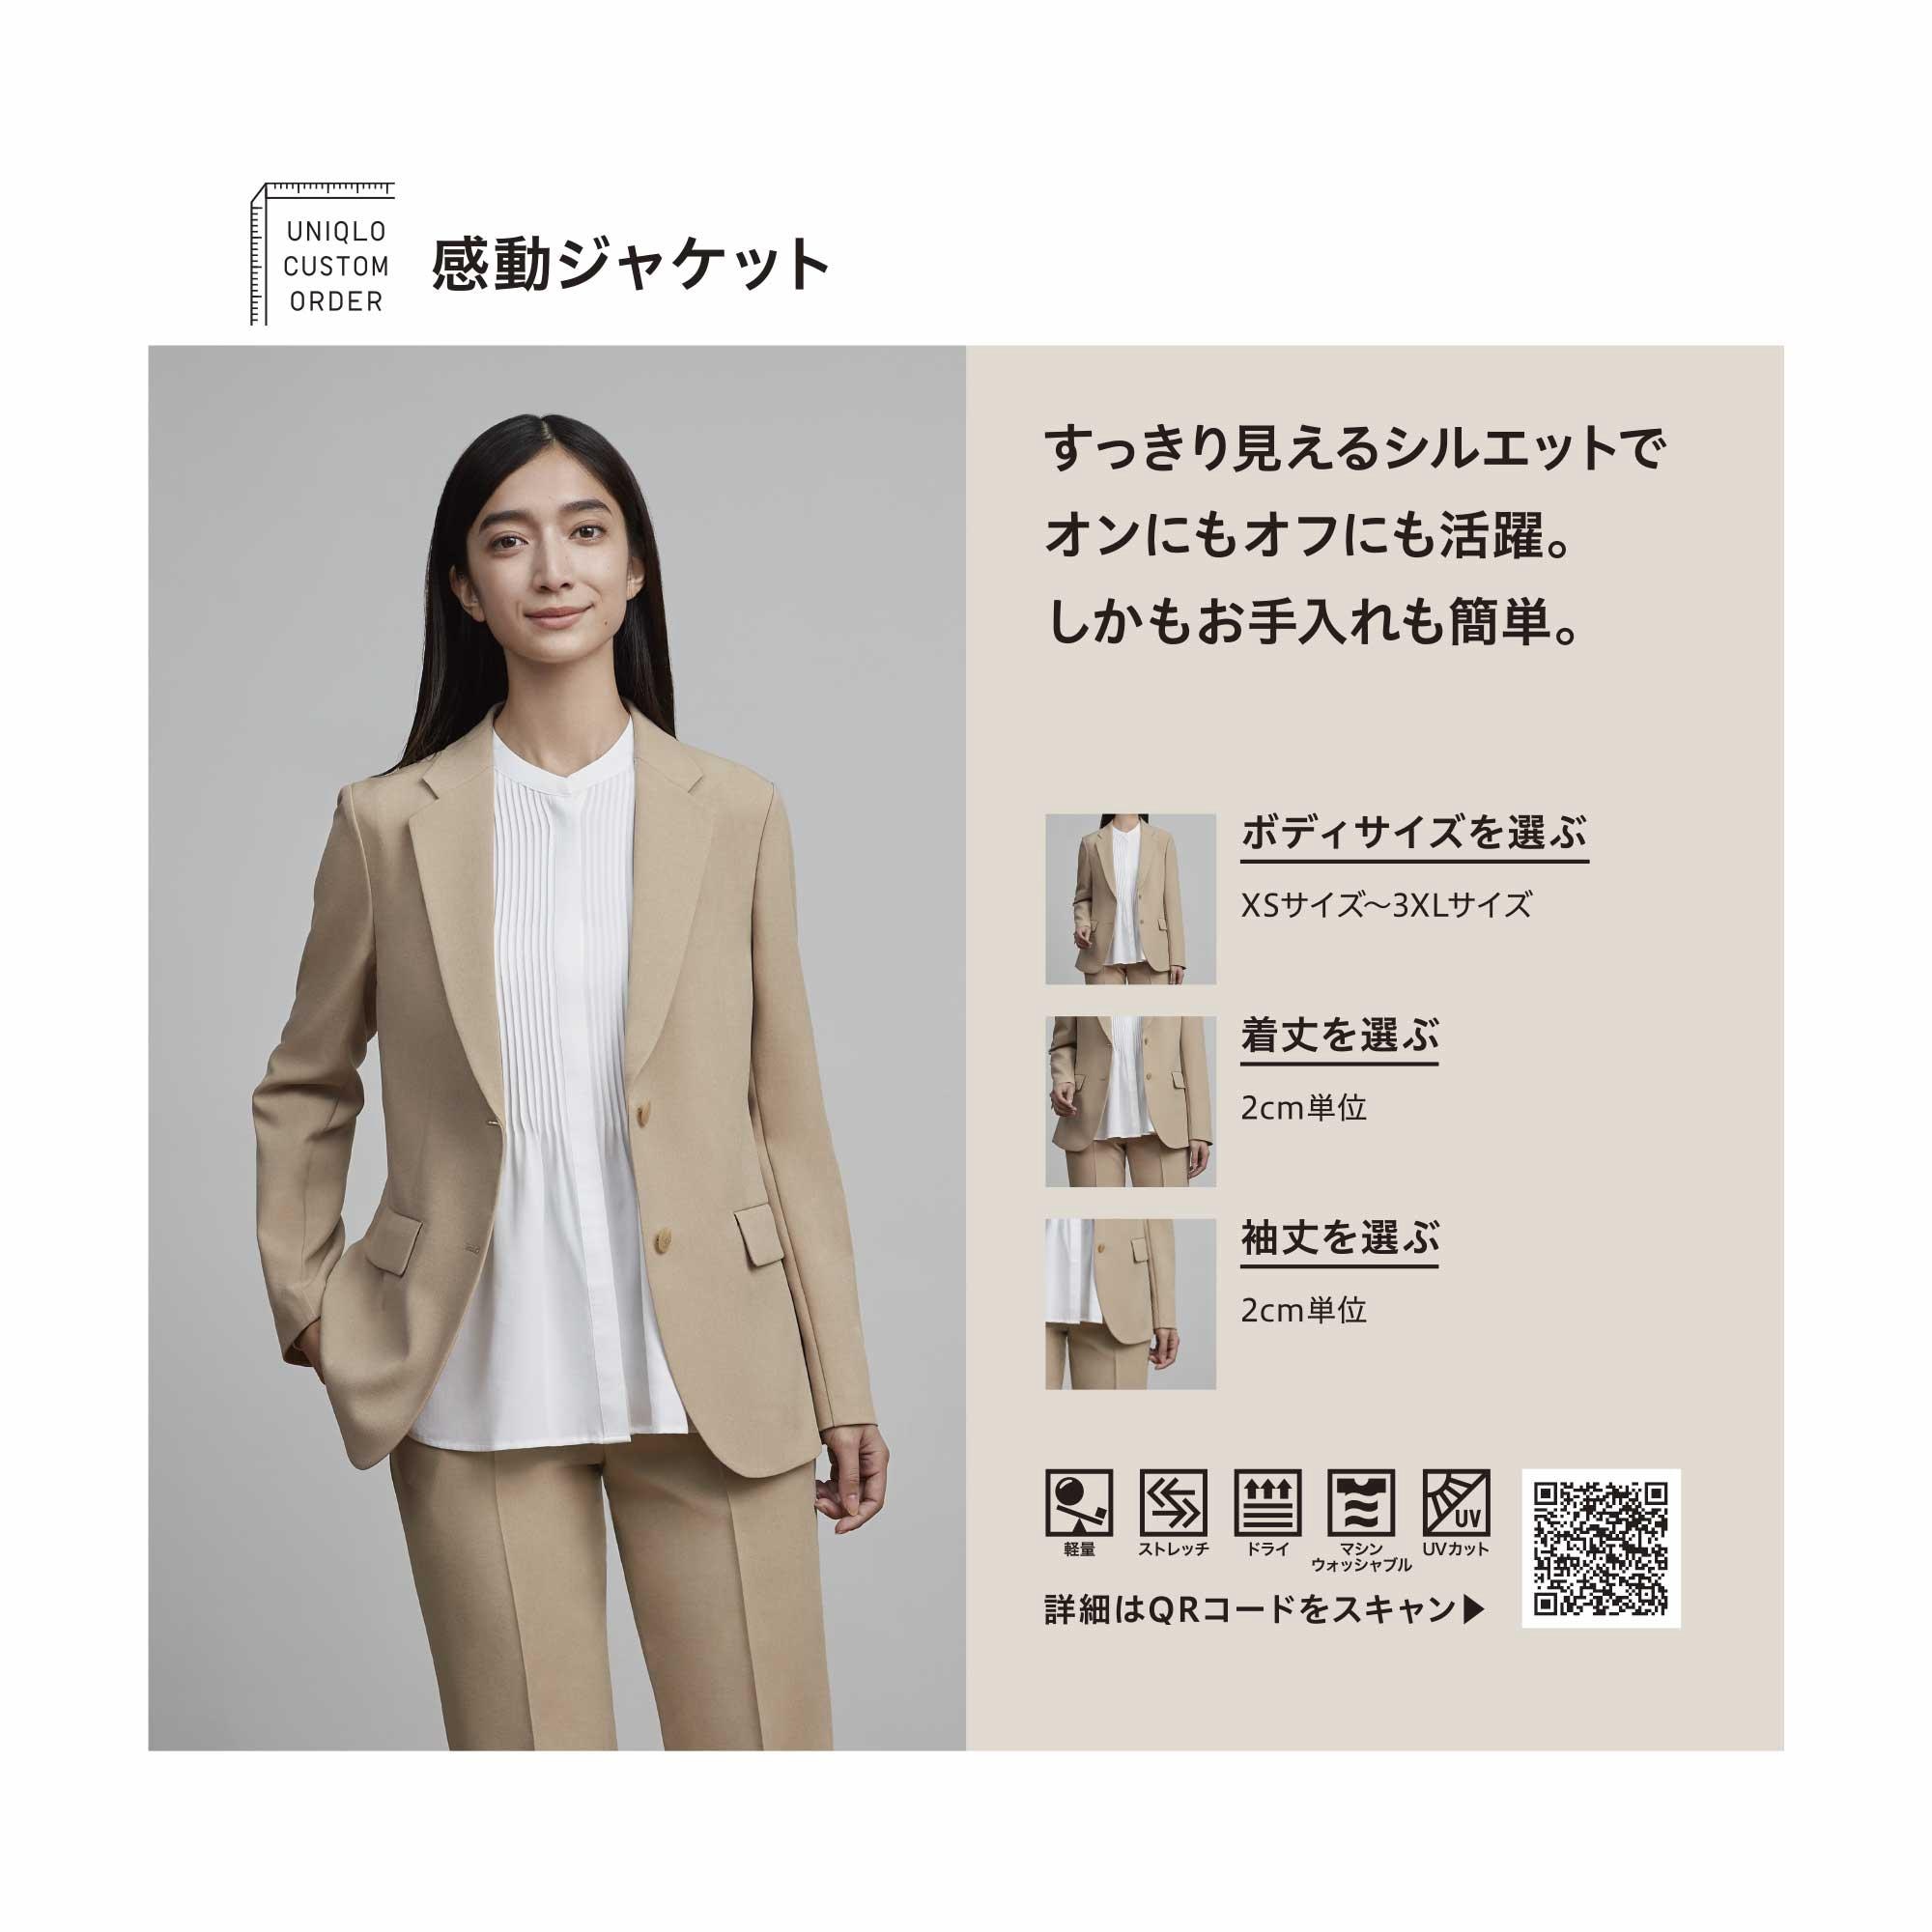 Nhận order mua quần áo nam nữ hàng hiệu của Uniqlo Nhật Bản  Chuyển phát  nhanh Quốc Tế Logistics Bestcargo